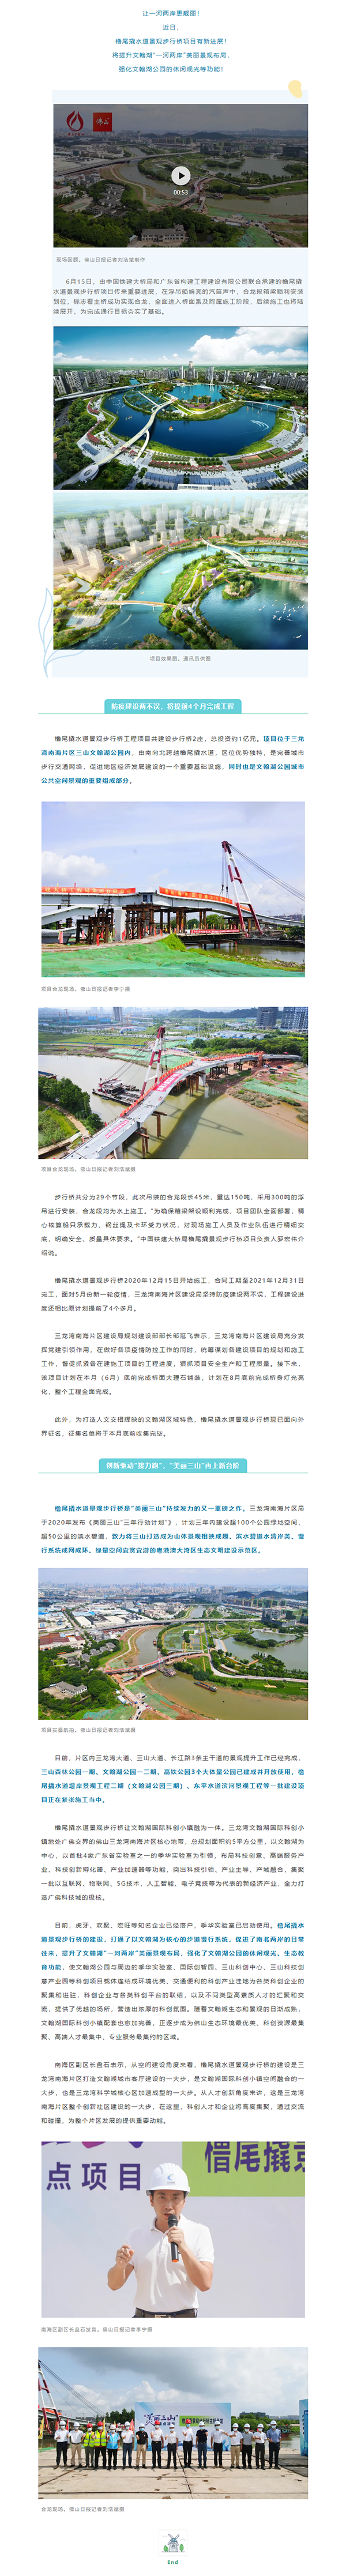 水清岸美！三山橹尾撬水道景观步行桥项目合龙，预计8月底全面完成.png